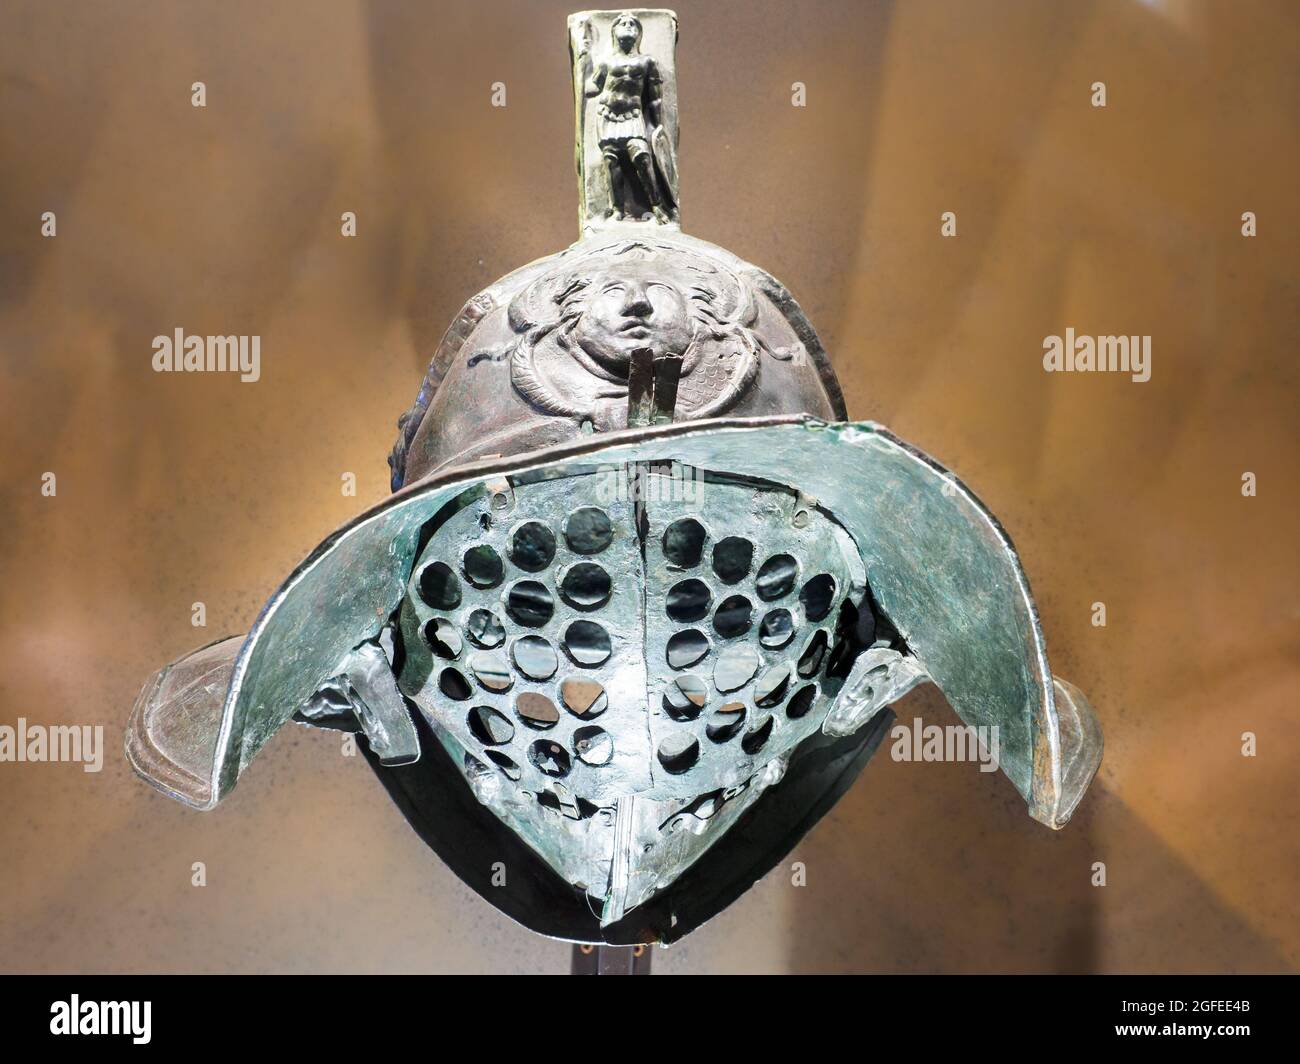 Il casco di bronzo del gladiatore di Murmillo con gorgoneion e Marte, grifoni ed erote sulla cresta - caserme gladiatoriali, Pompei seconda metà del i secolo d.C. Foto Stock